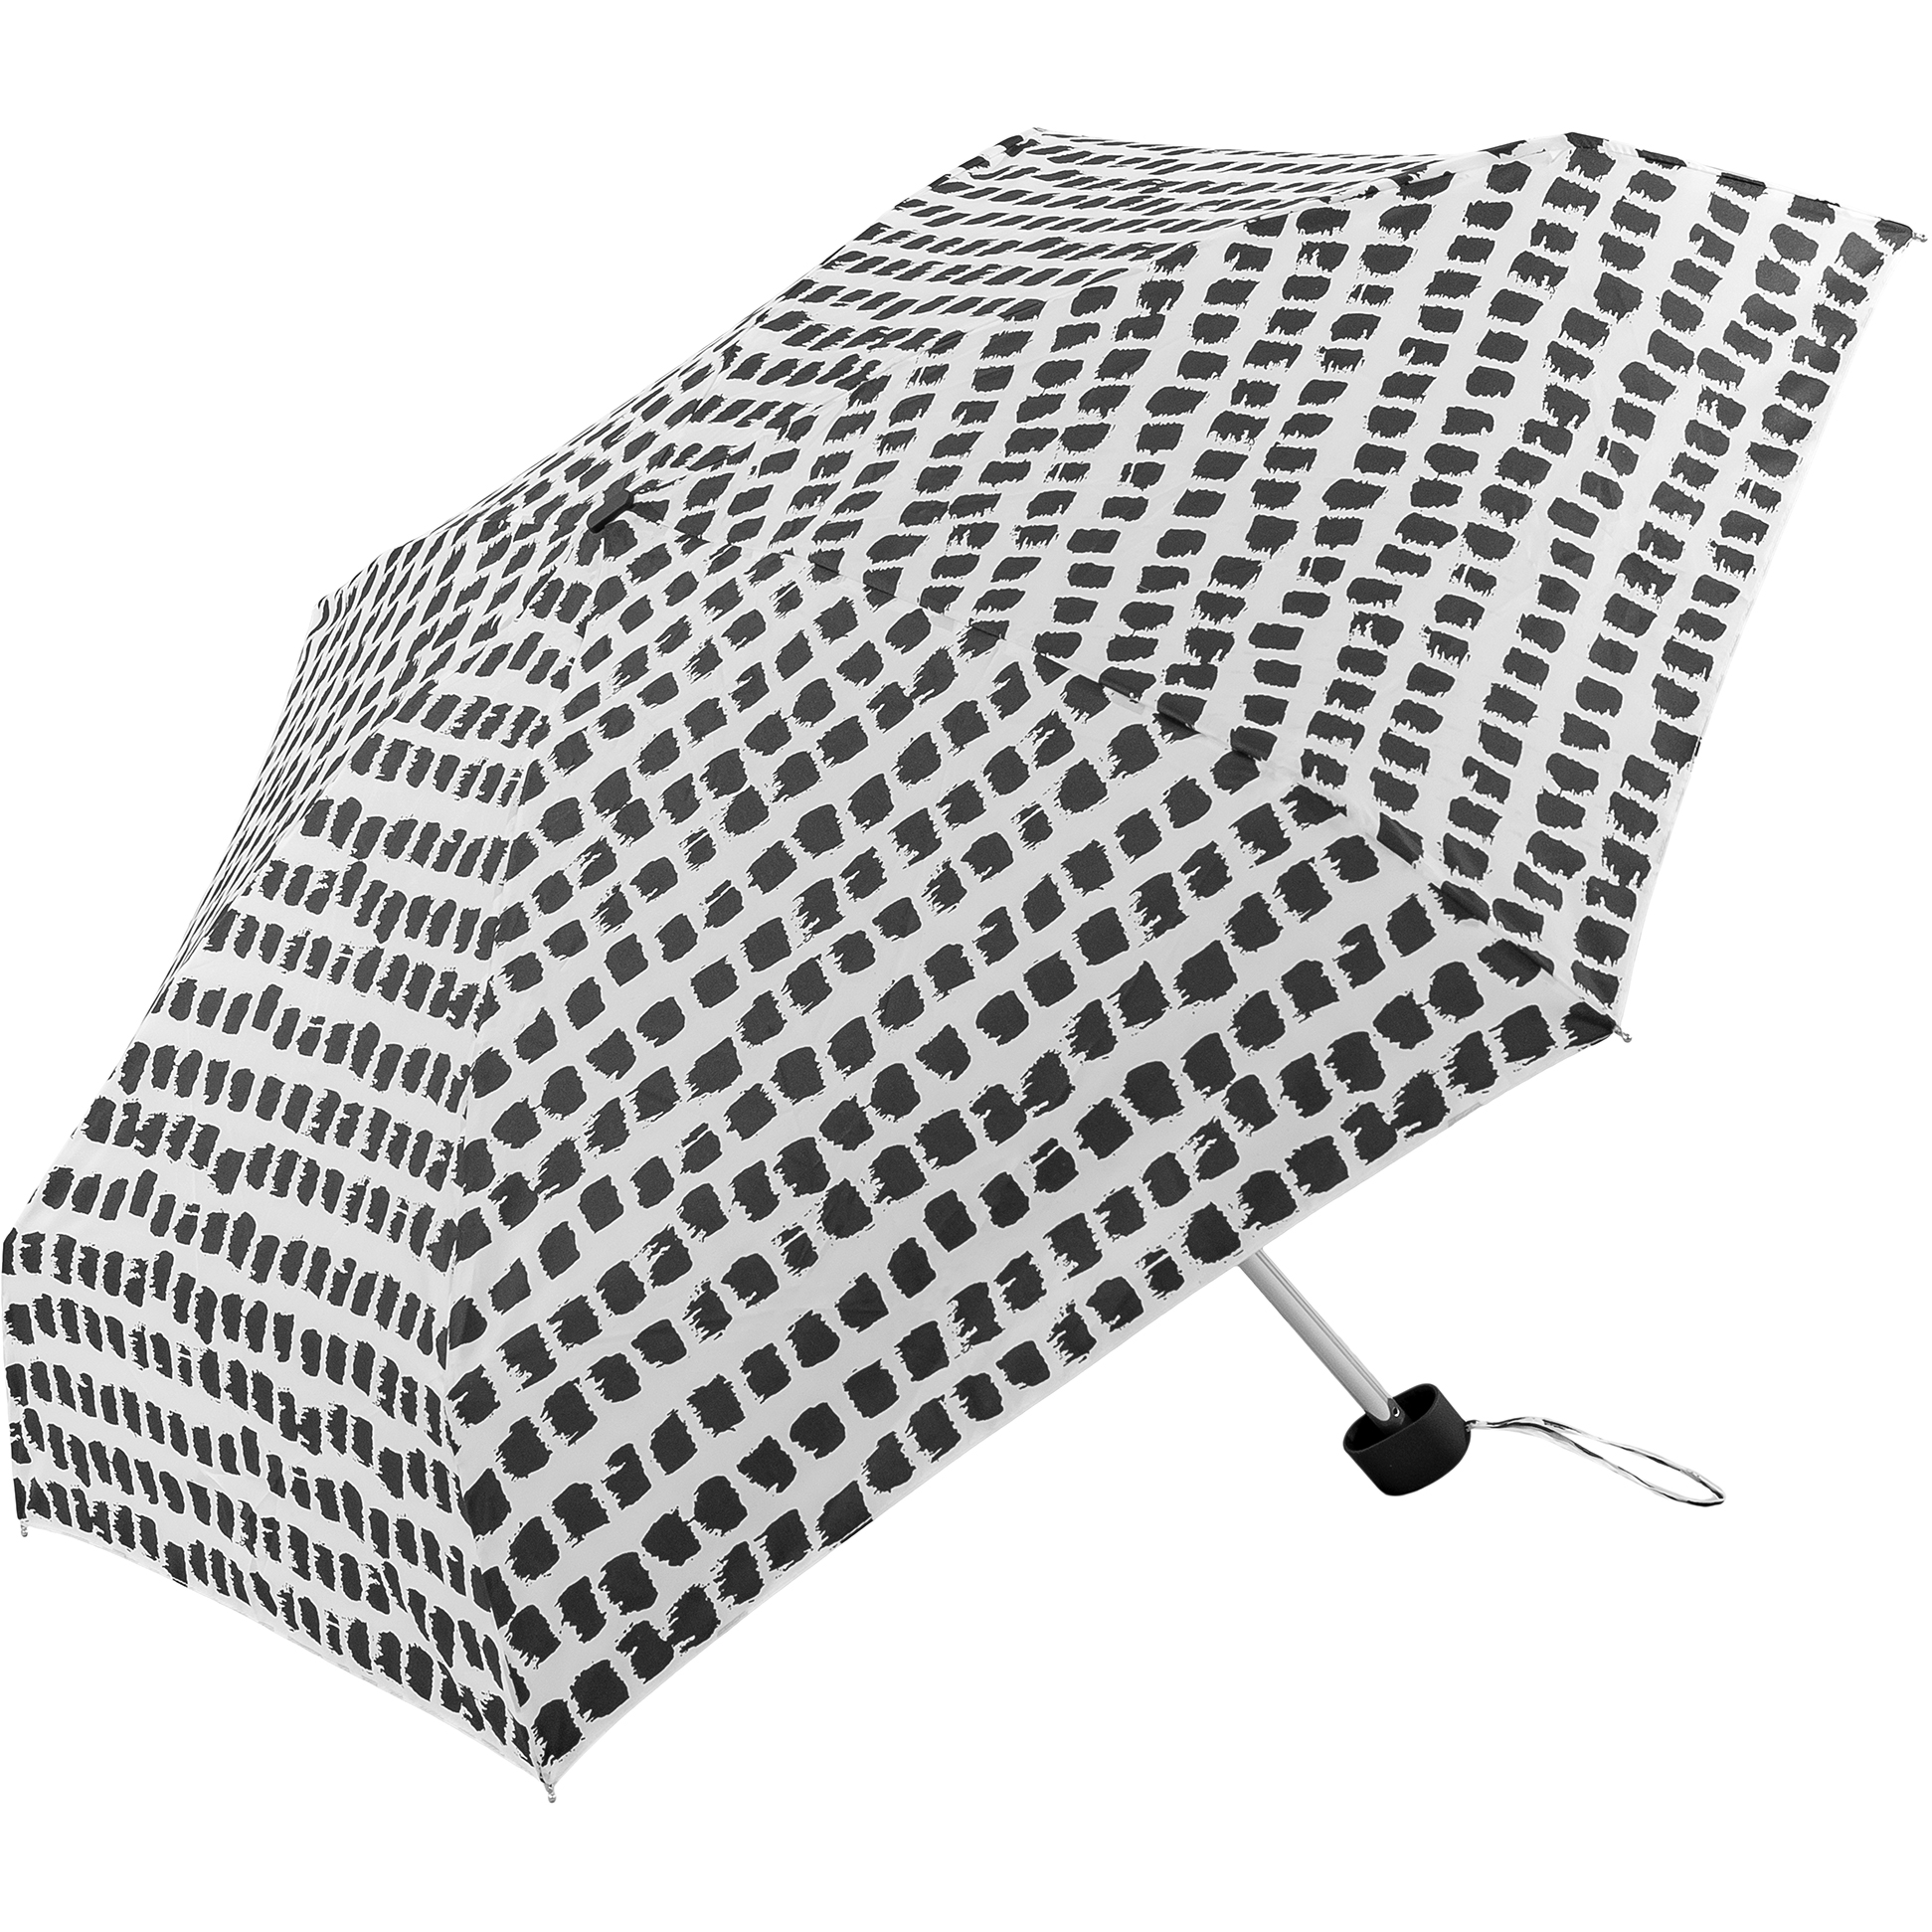 Super mini umbrella with black and white spots (51034-2)